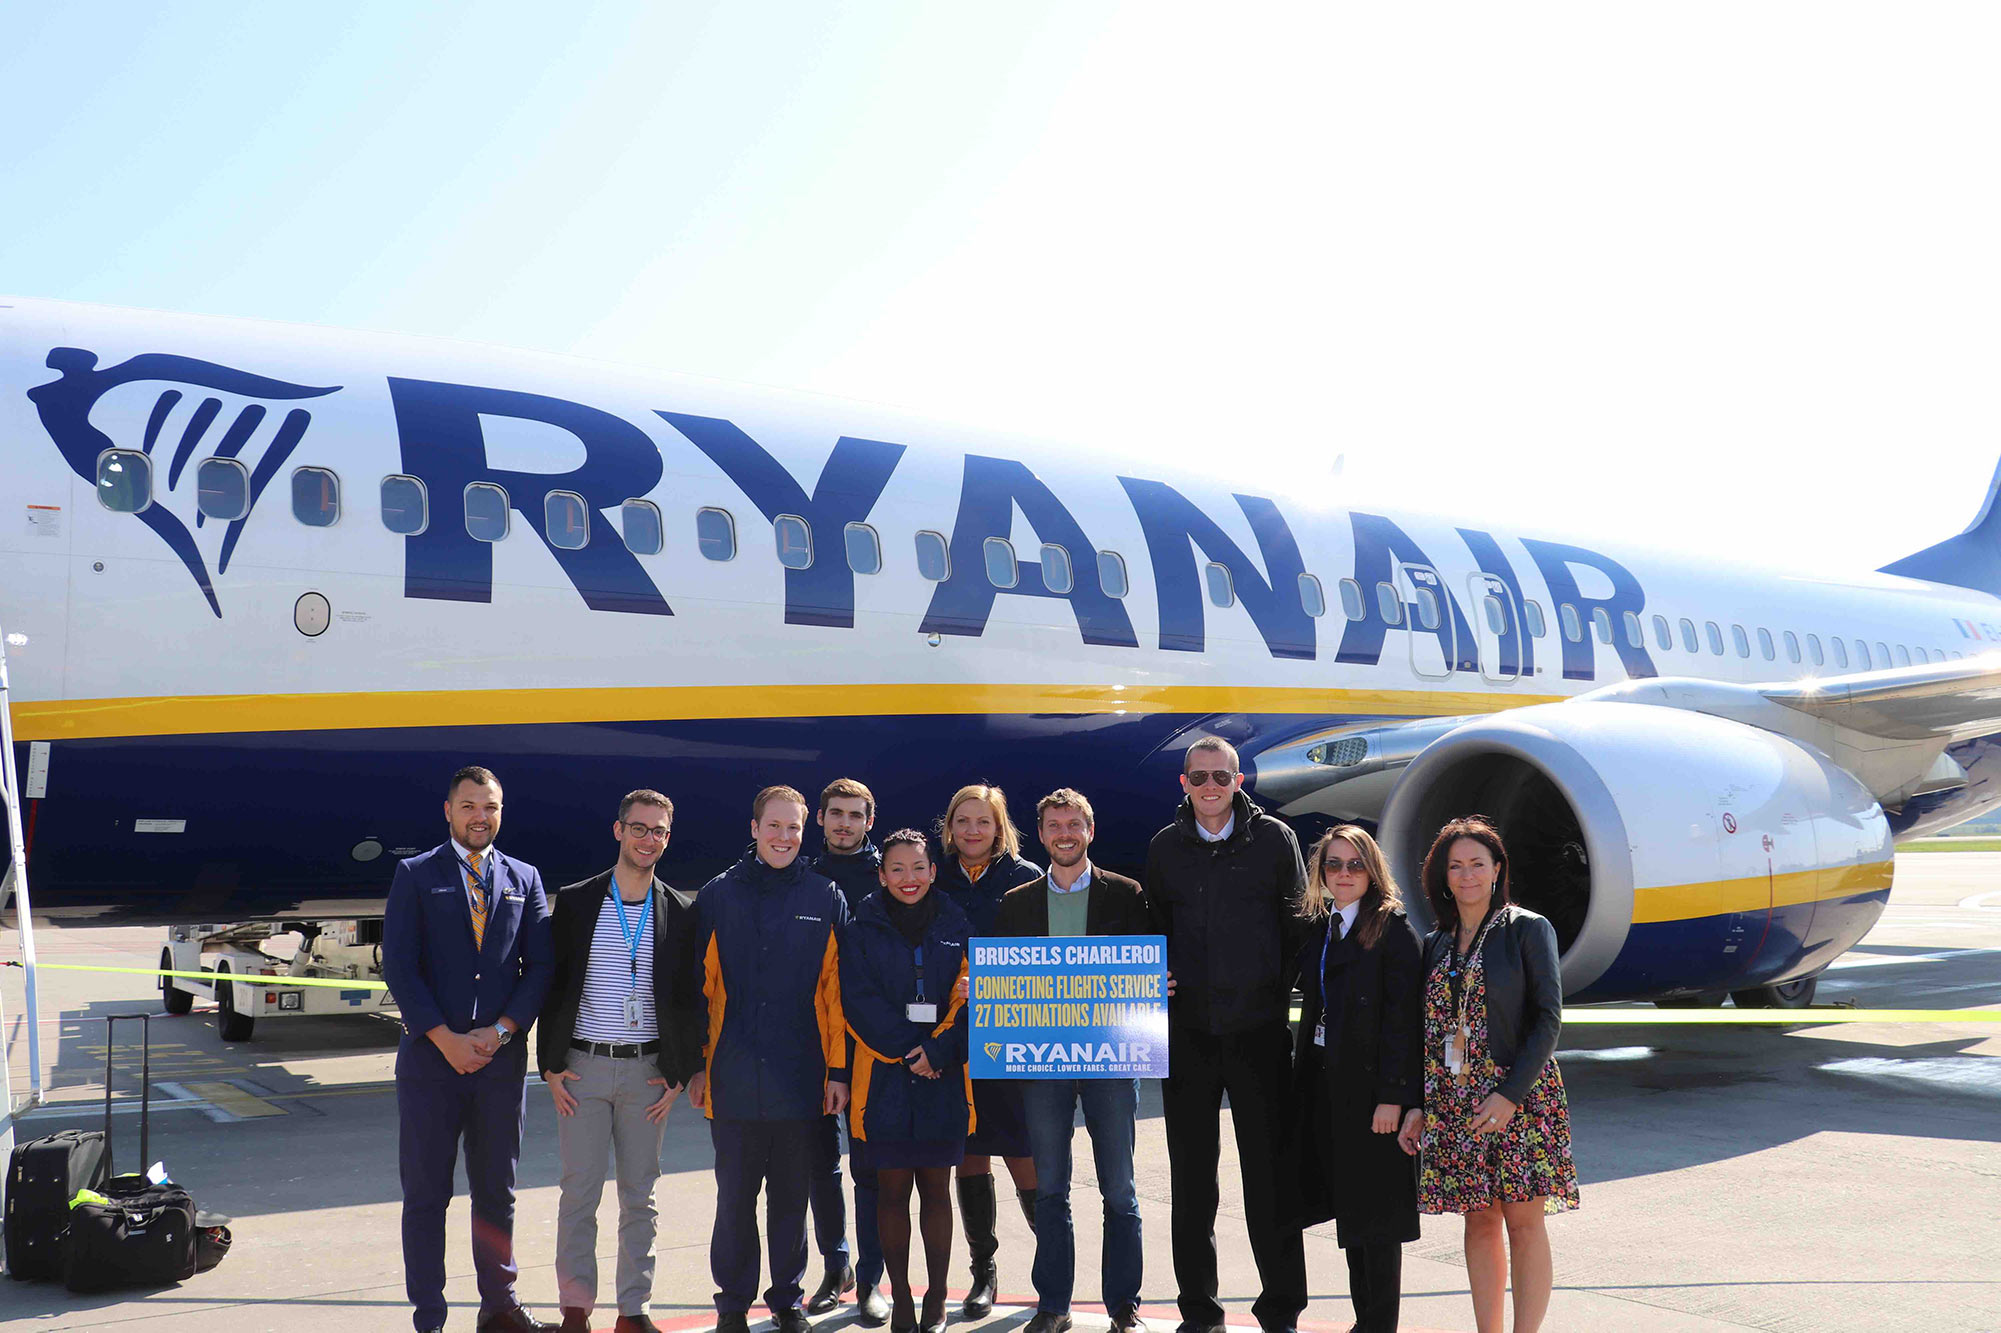 Ryanair Lancia Un Servizio Di Voli In Connessione A Bruxelles Charleroi Per 27 Destinazioni